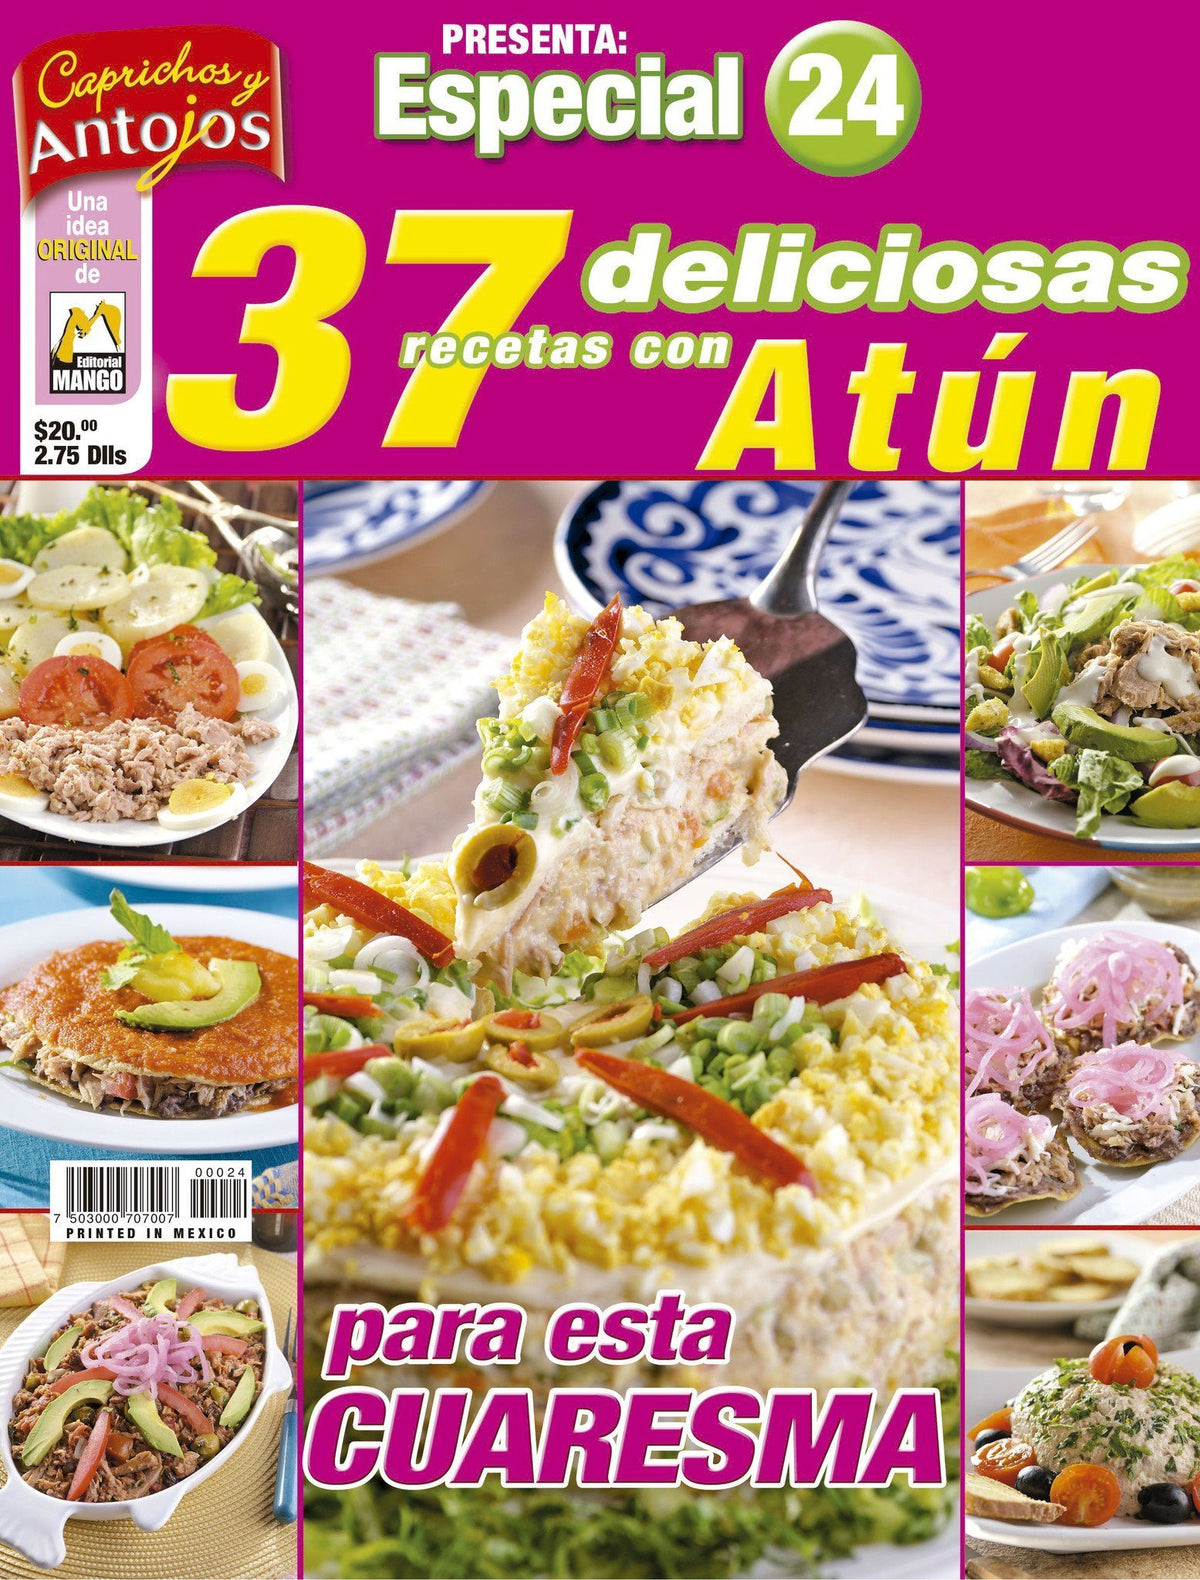 Caprichos y Antojos Especial 24 - 37 deliciosas recetas con at̼n - Formato Digital - ToukanMango